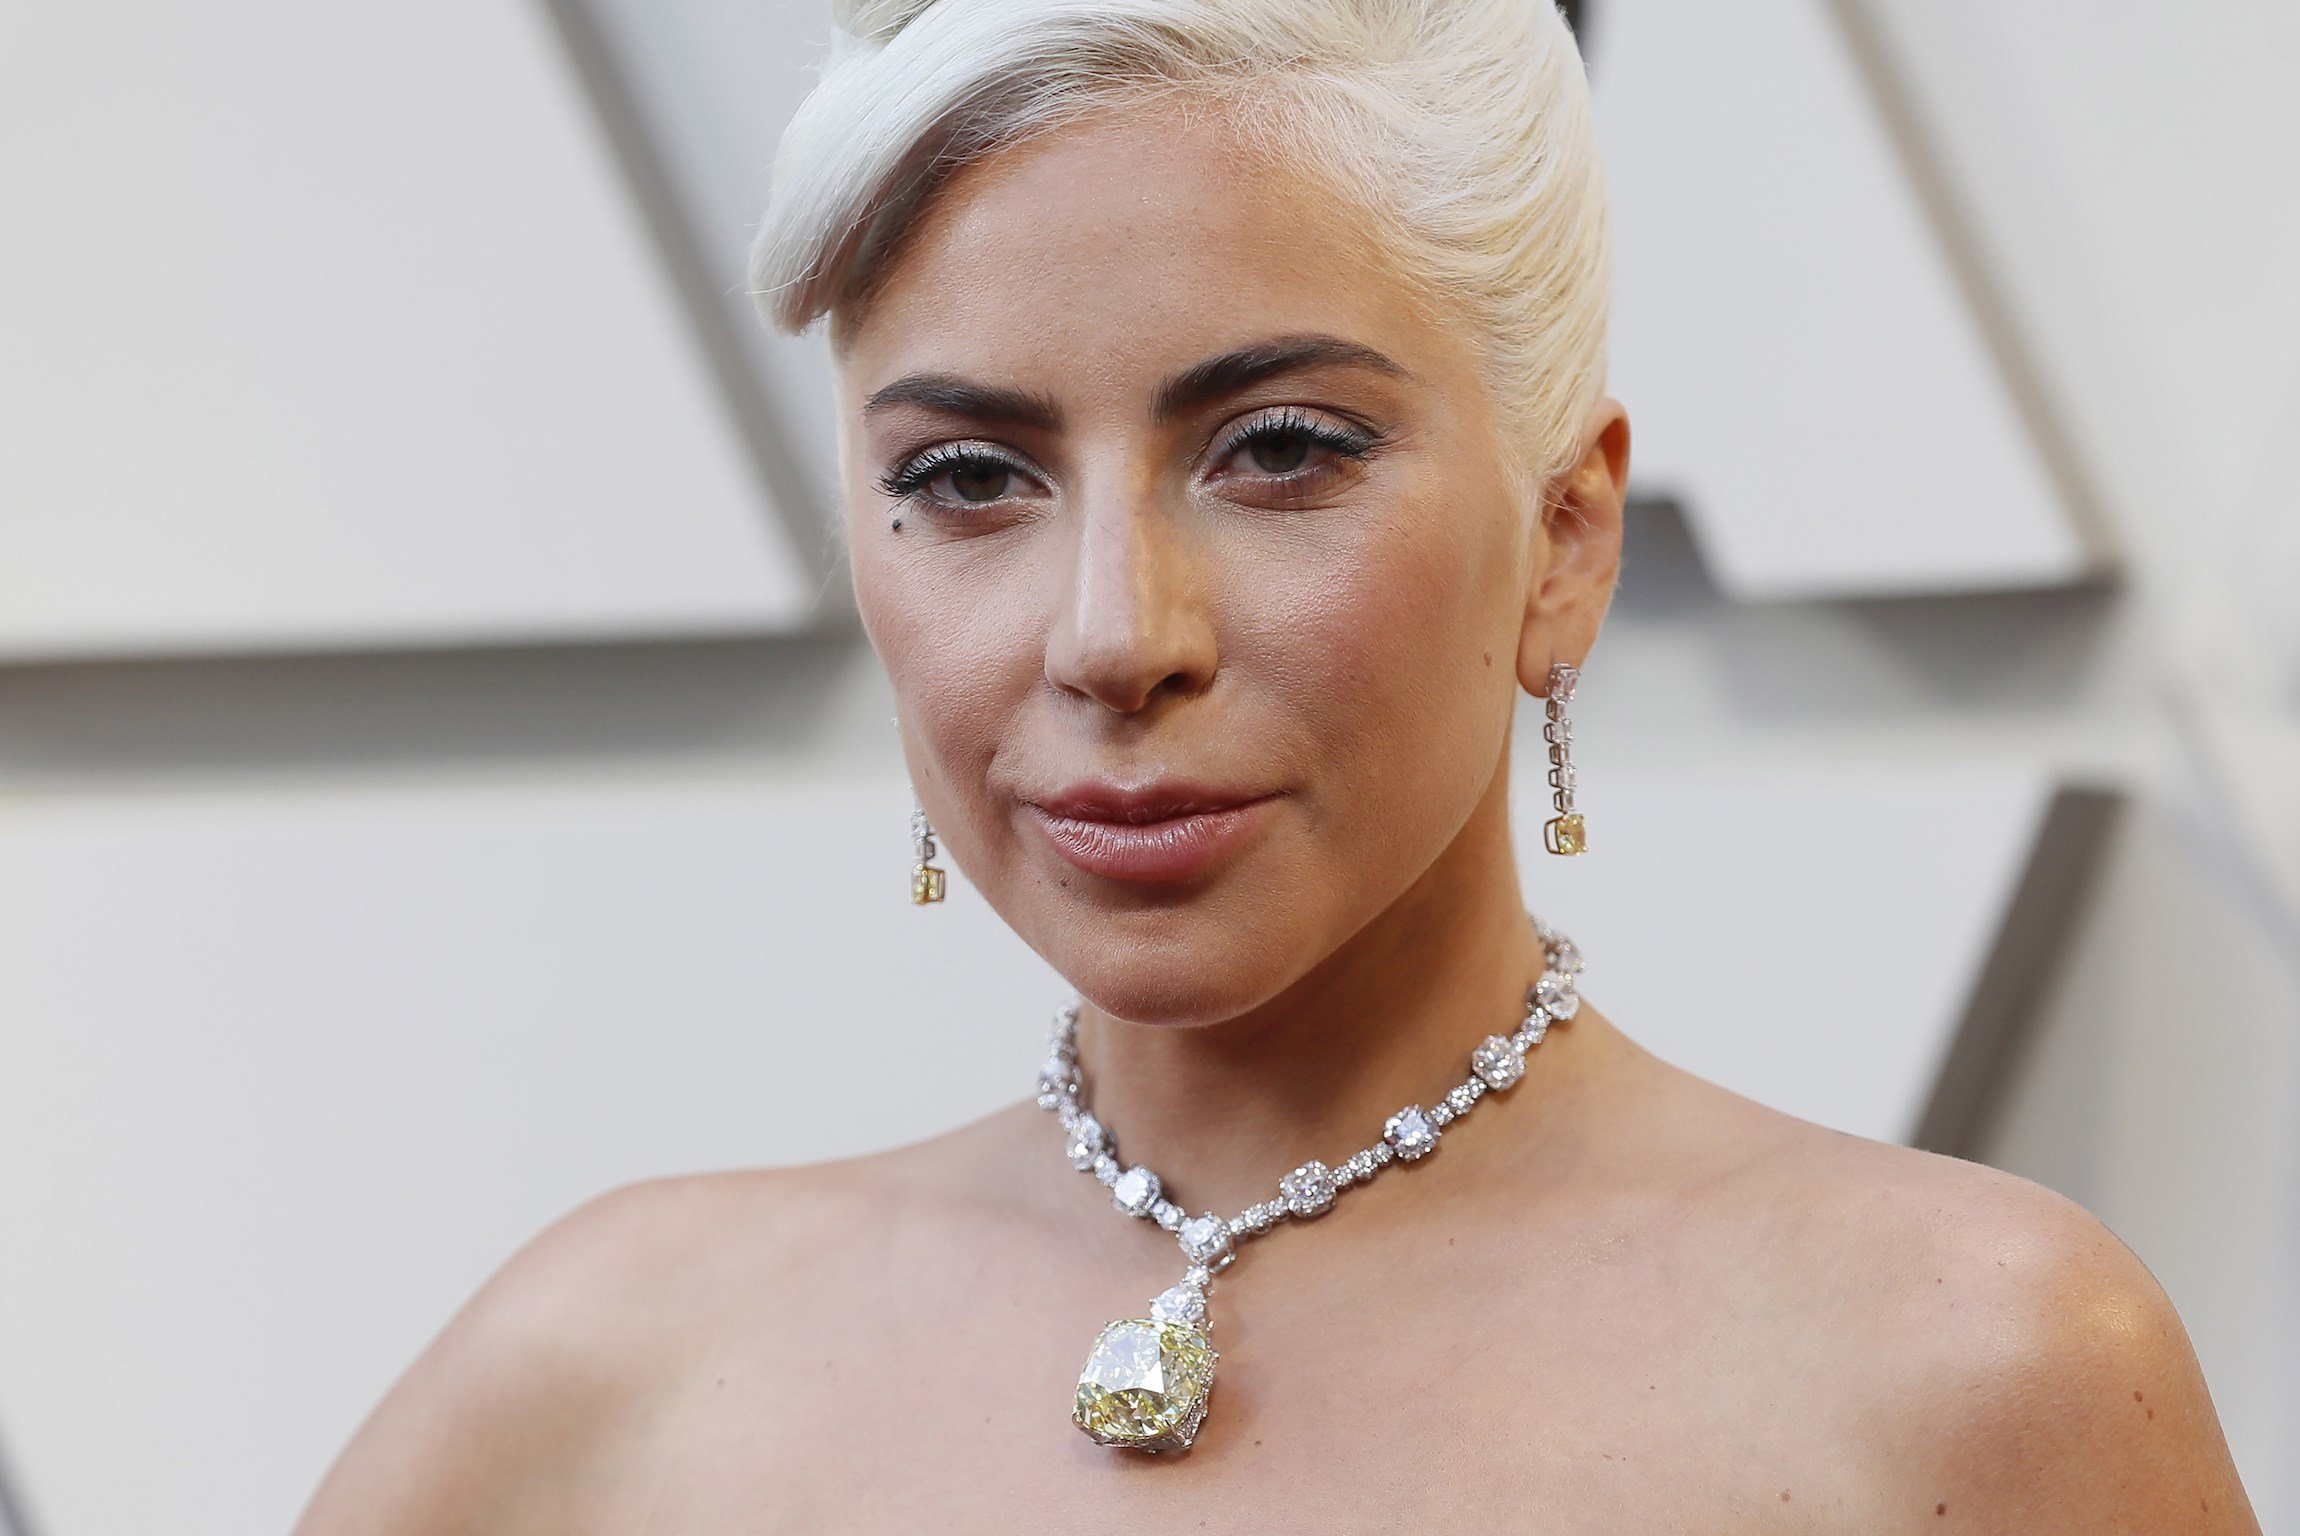 Fotos comprometidas de Lady Gaga corren como la pólvora en foros: “¿Todo era mentira?”